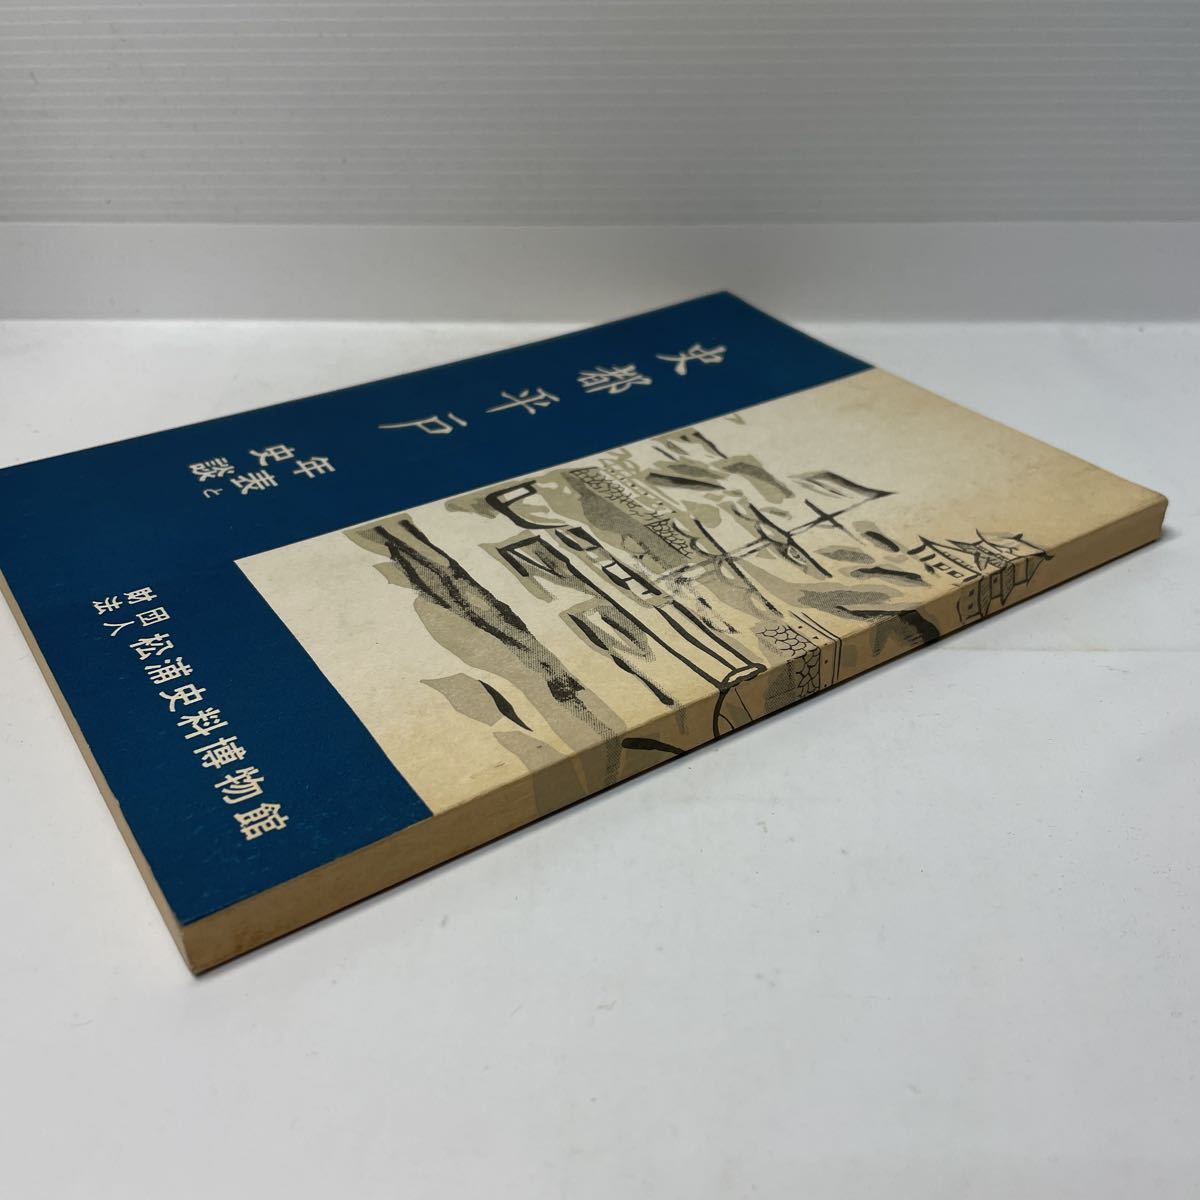 ソ連の軍用機 (1977年) カラーバックス／久住忠男(著) 販売売筋品 本